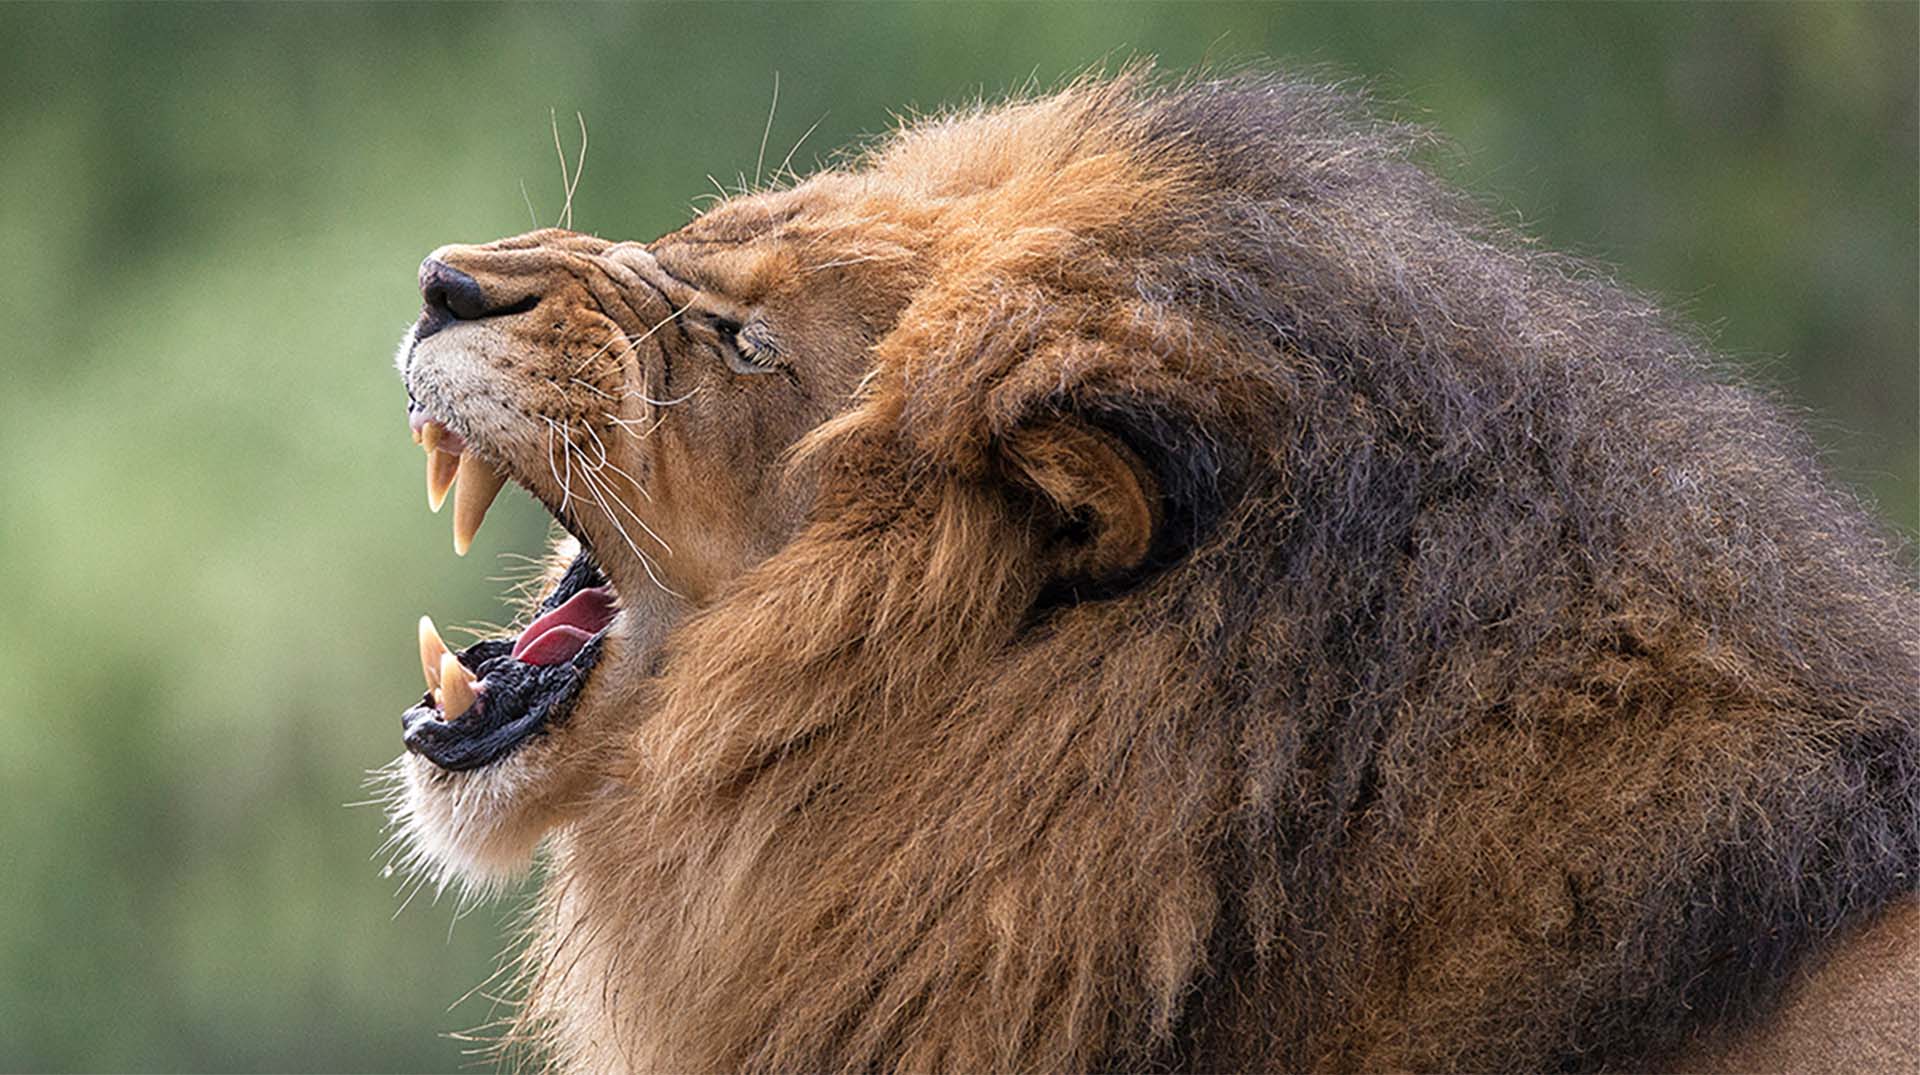 Material World & Lion's Mouth – Sastra Caksu